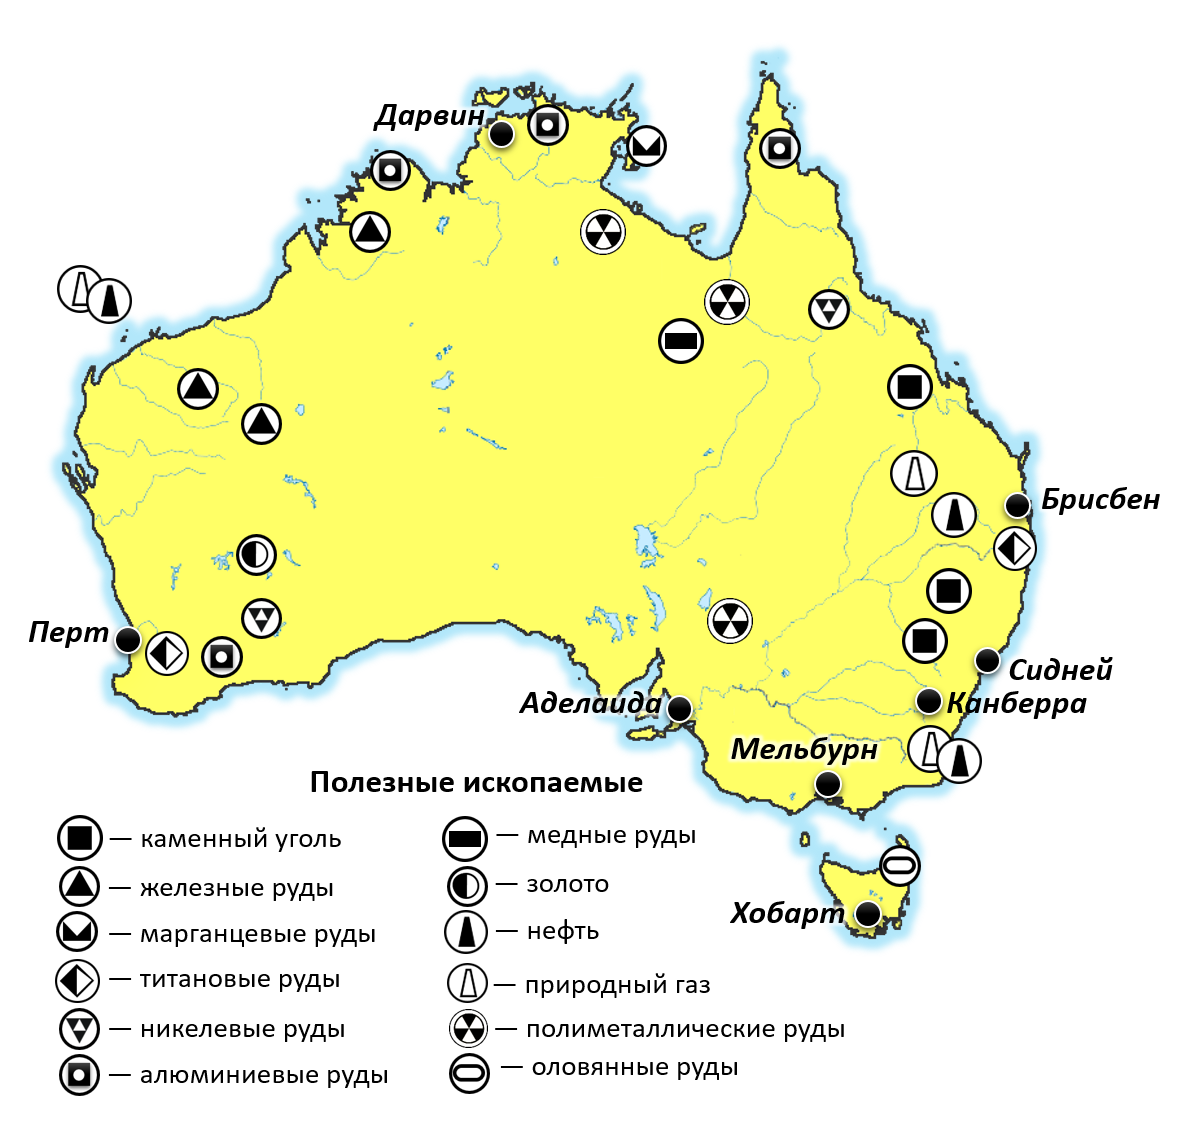 Месторождения железных руд в Австралии на карте. Месторождения полезных ископаемых в Австралии на карте. Месторождения полезных ископаемых Австралии на контурной карте. Карта природных ископаемых Австралии.